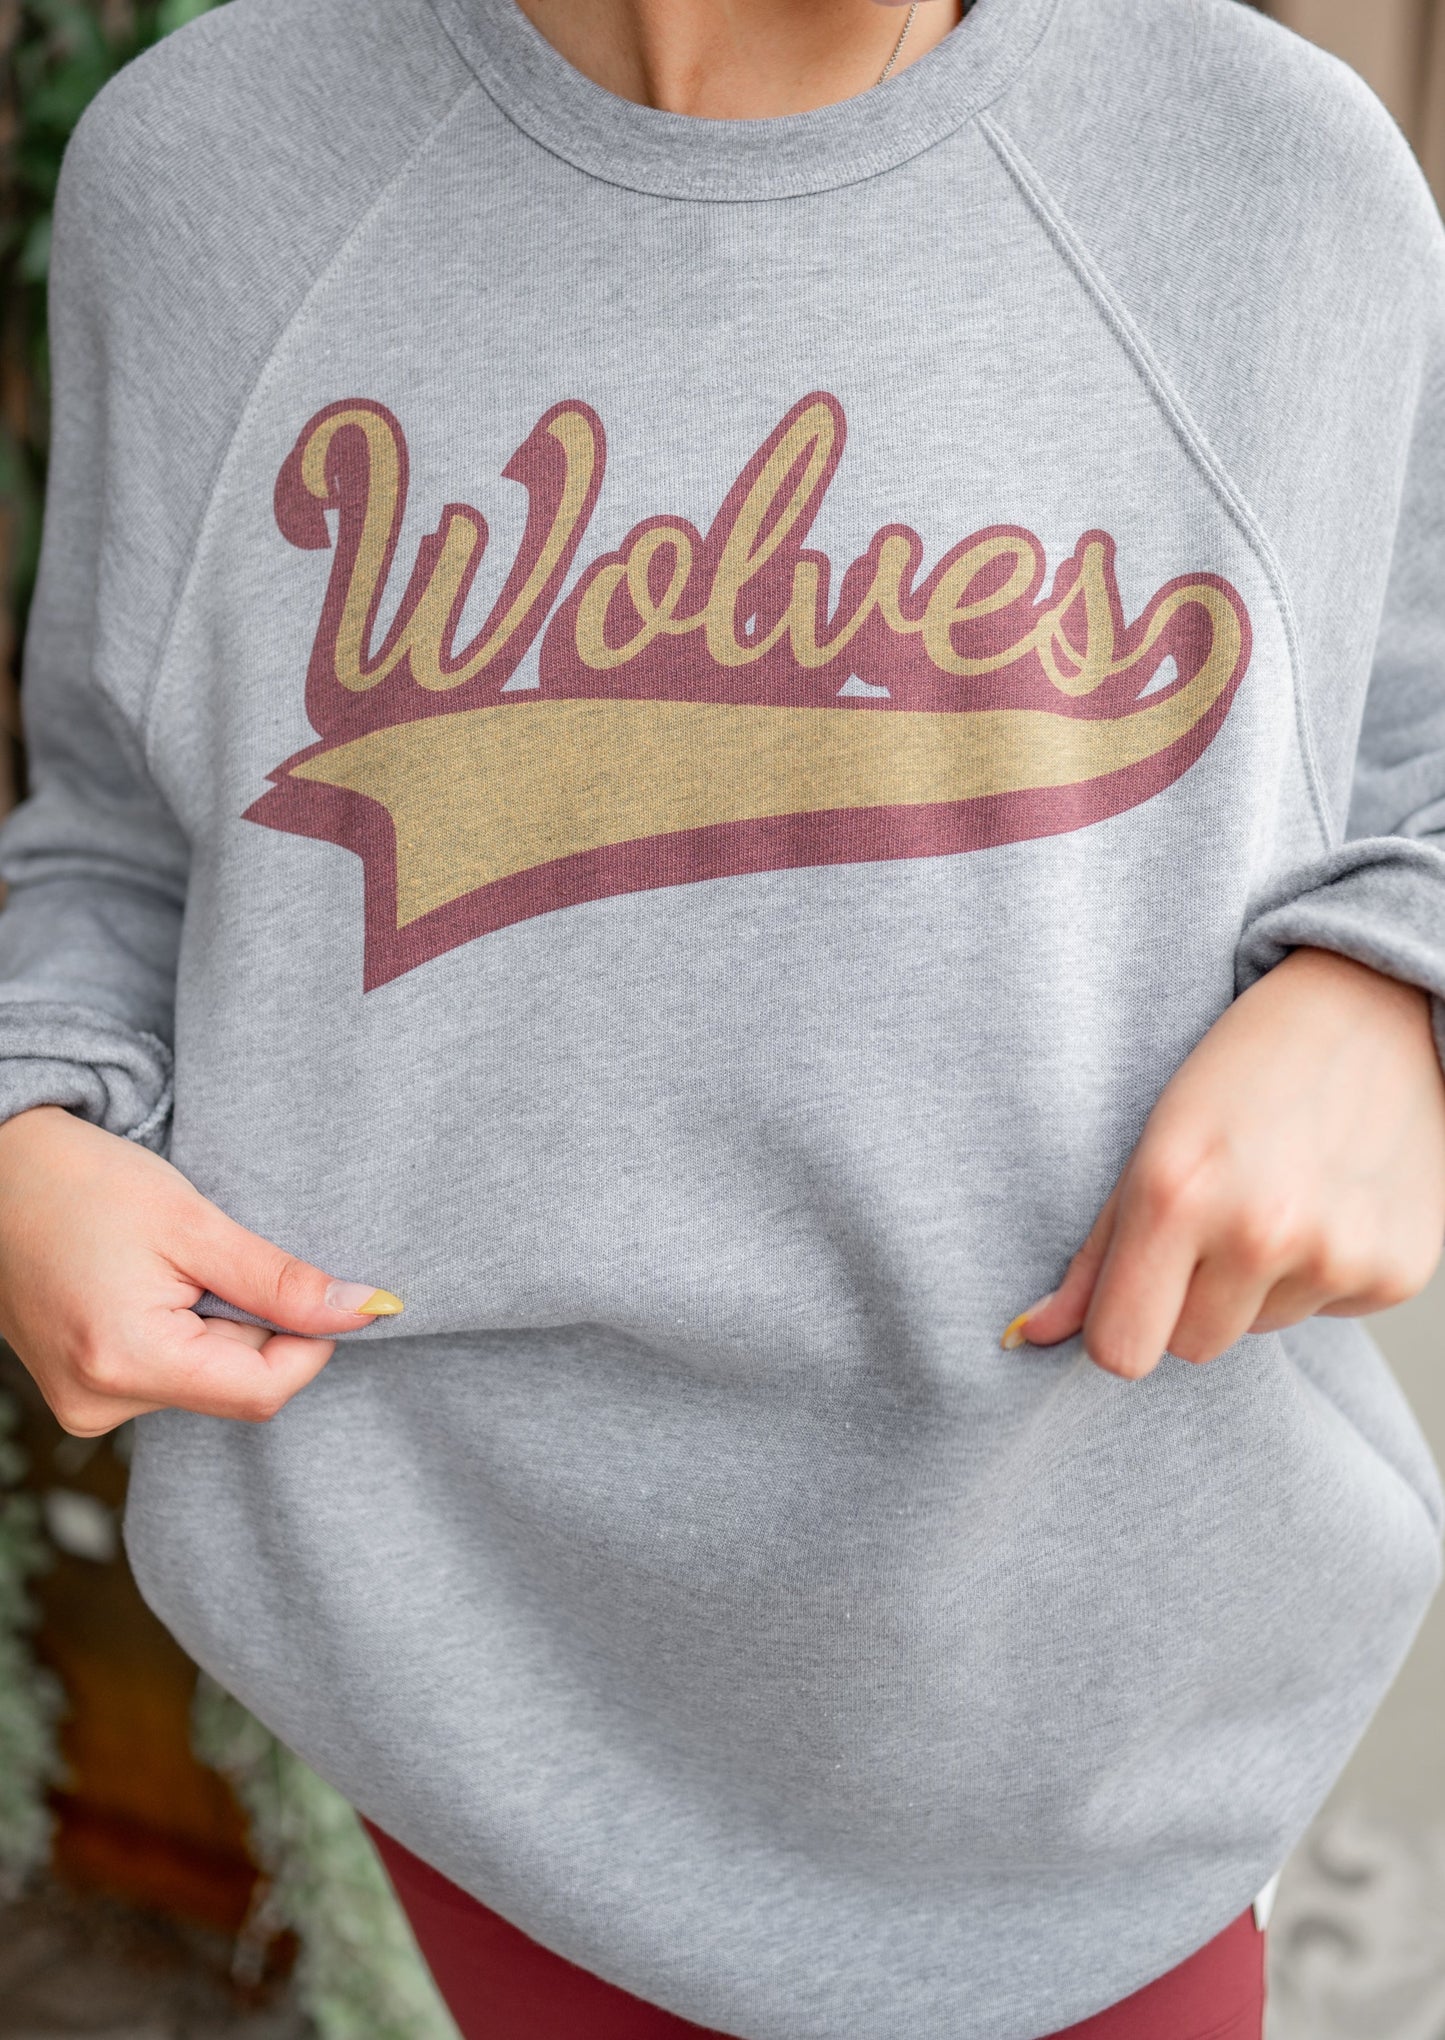 Vintage Wolves Crew Sweatshirt